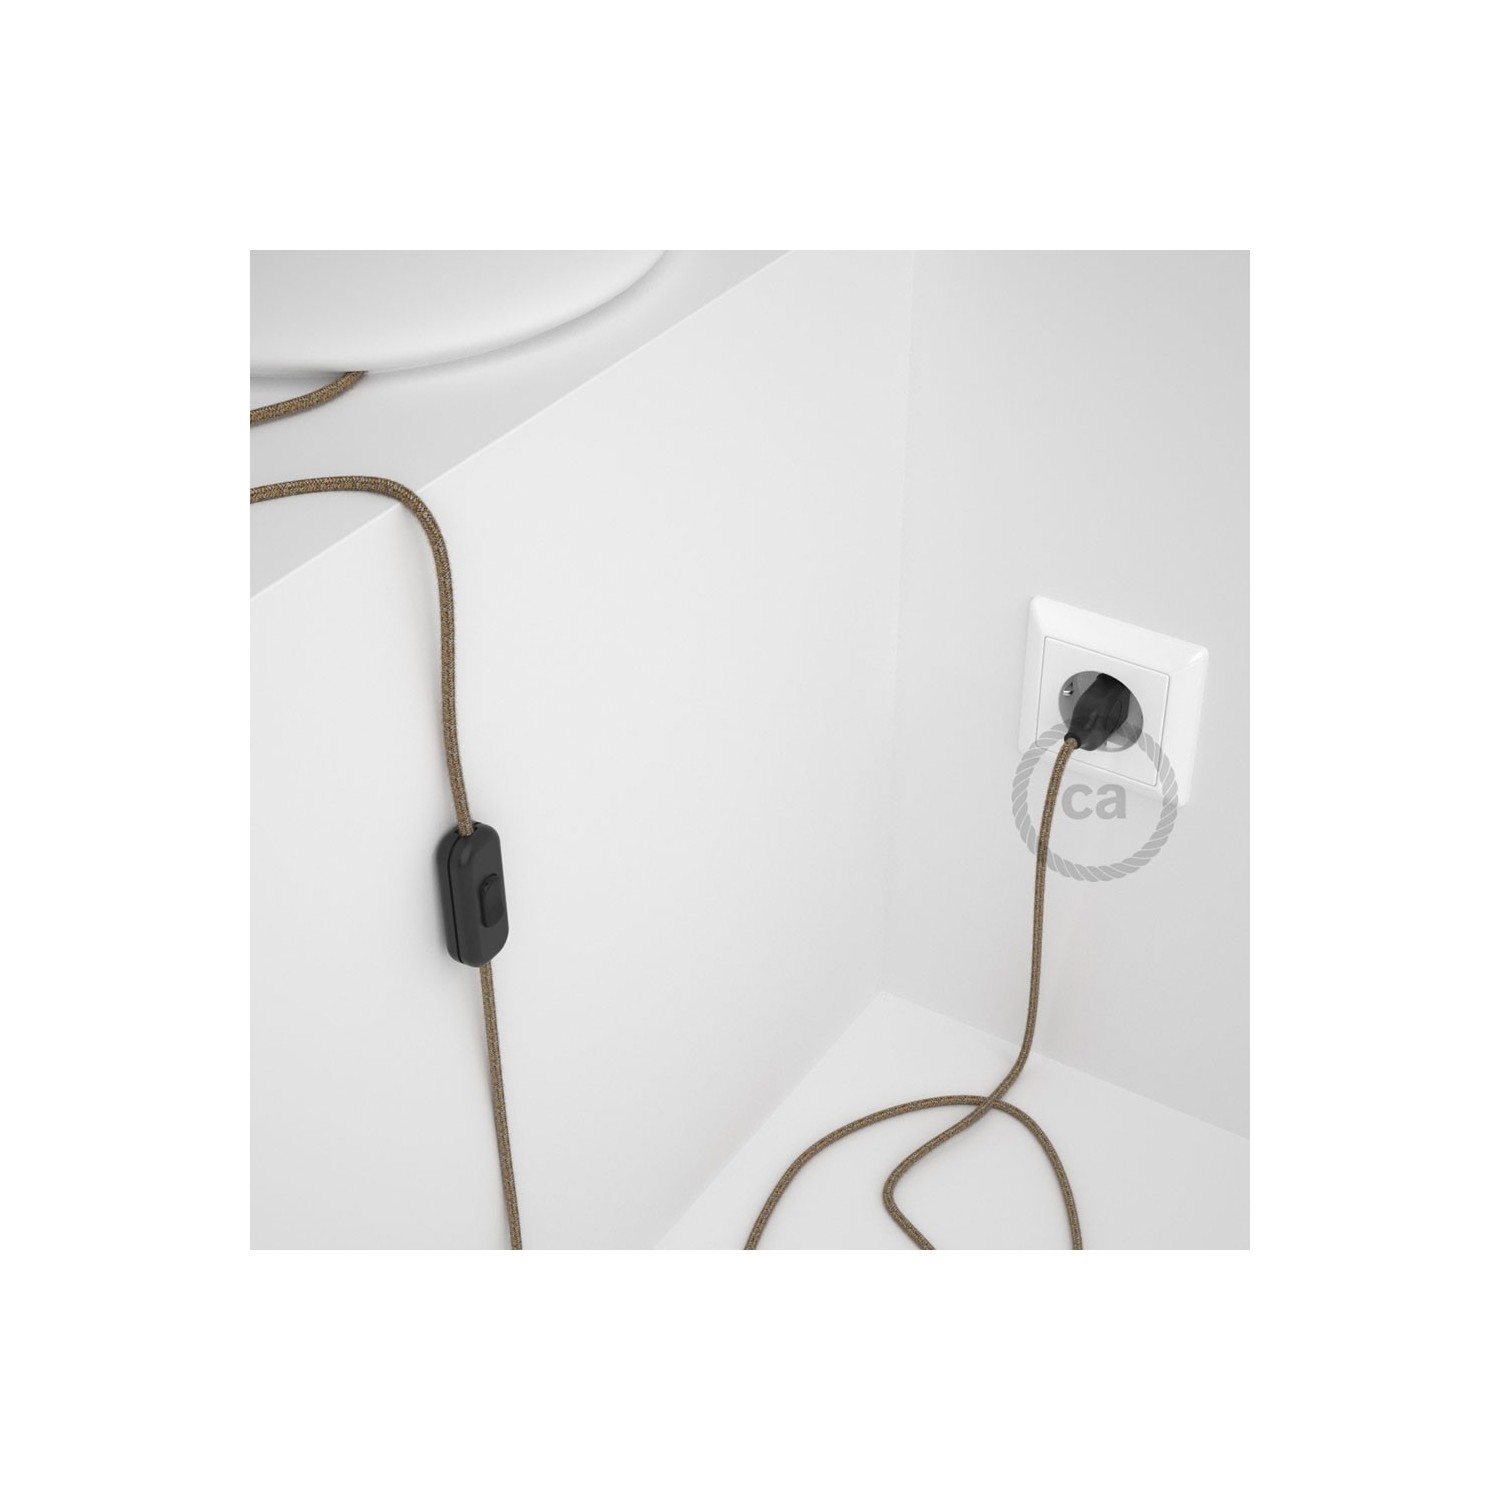 Cordon pour lampe, câble RS82 Coton et Lin Naturel Marron 1,80 m. Choisissez la couleur de la fiche et de l'interrupteur!